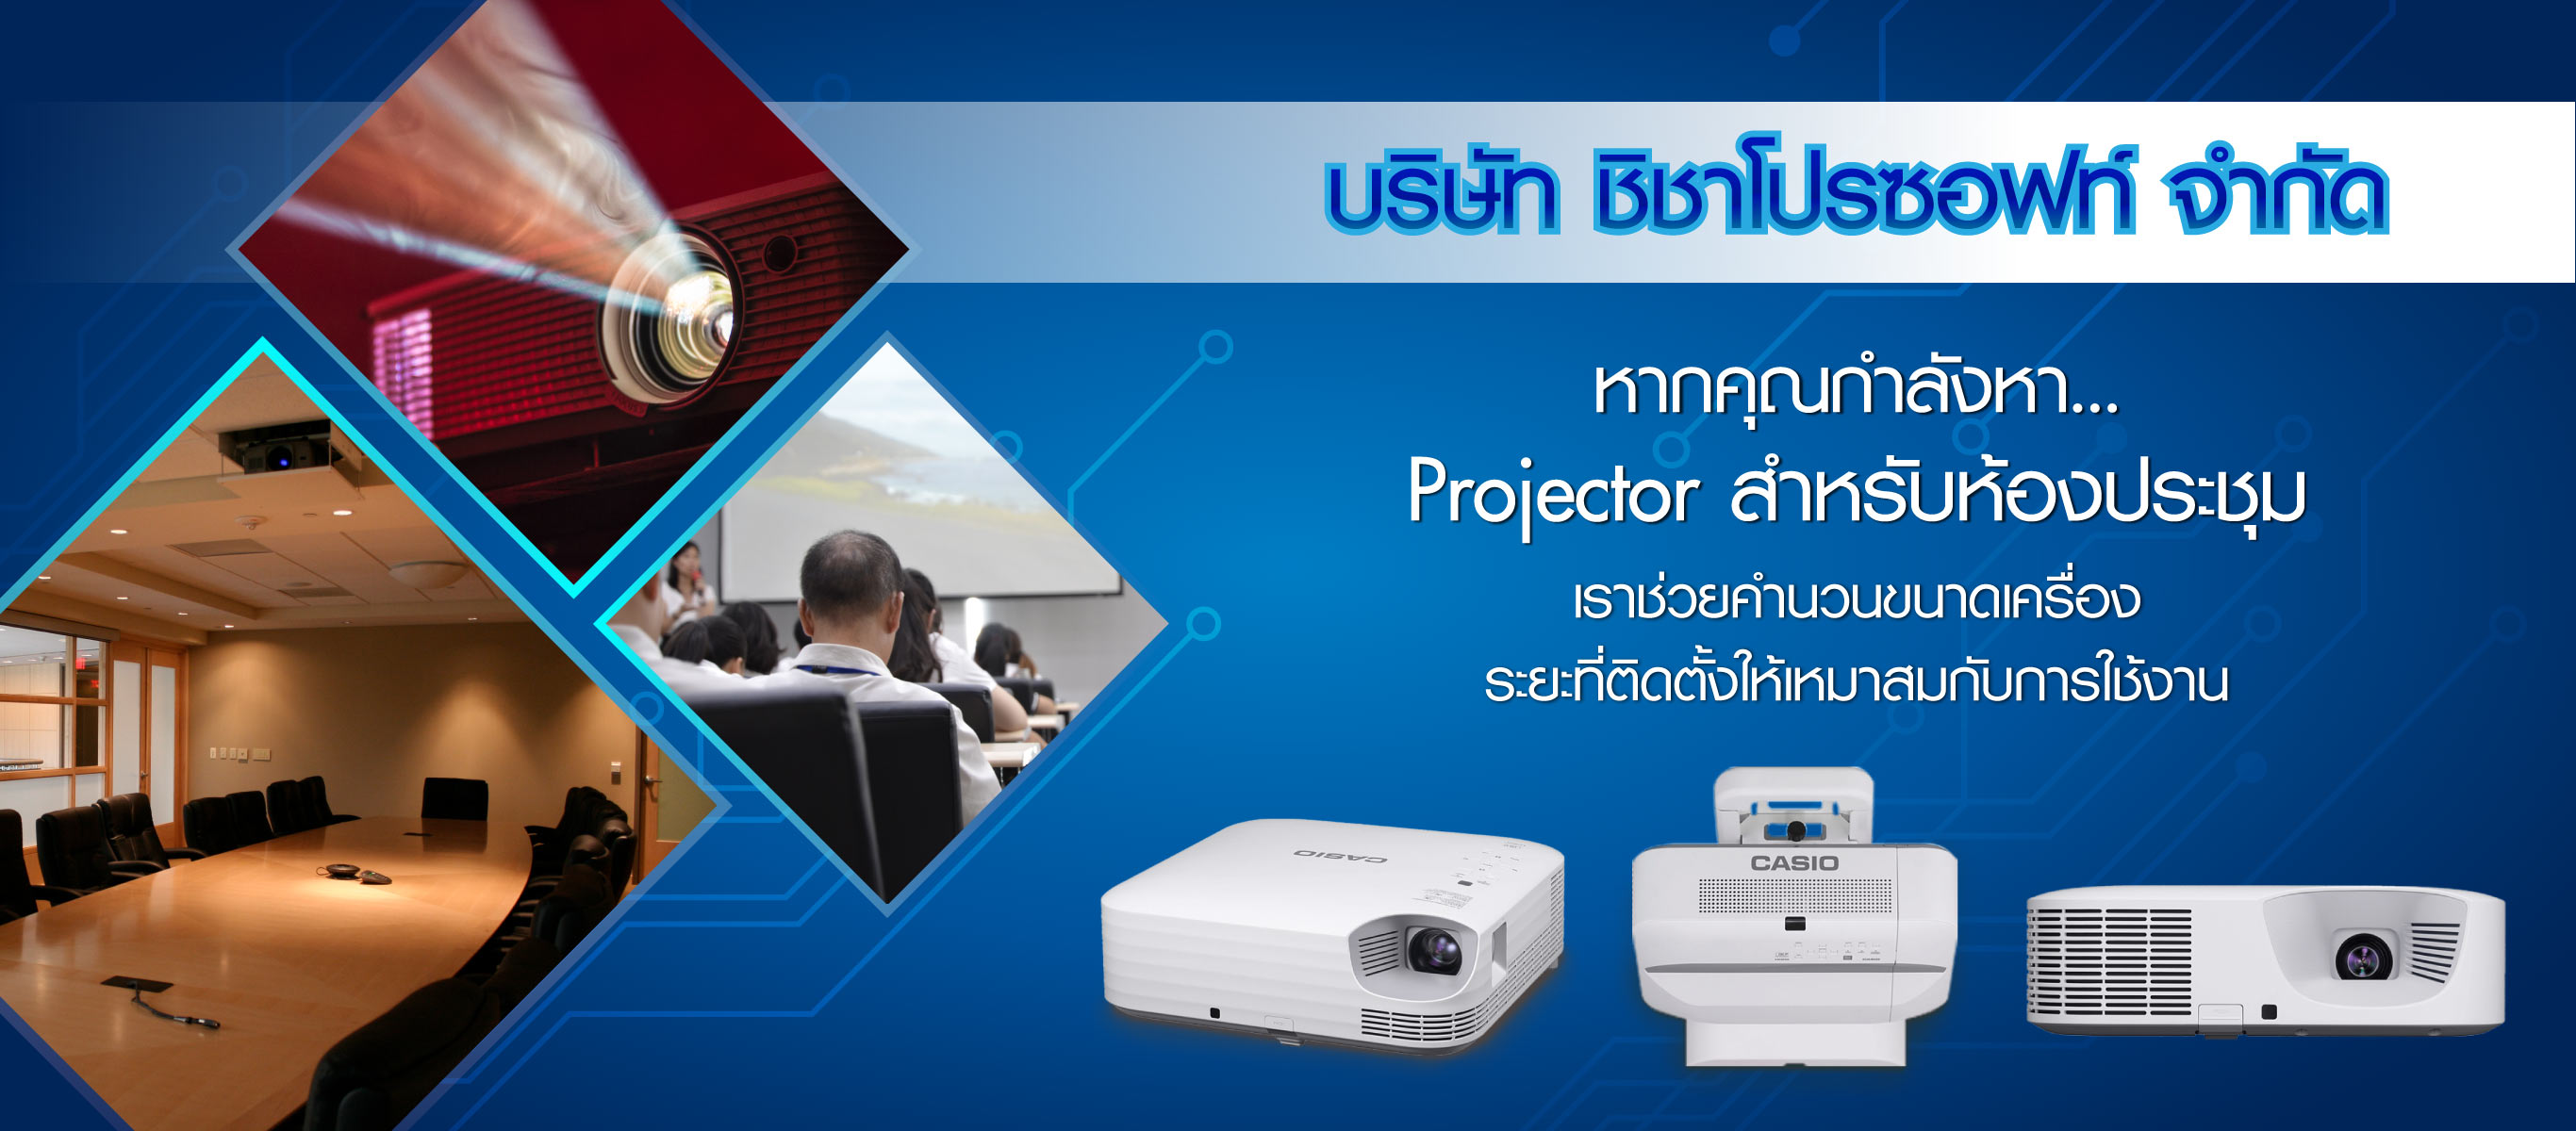 ชิชาโปรซอฟท์-Projectorสำหรับห้องประชุม